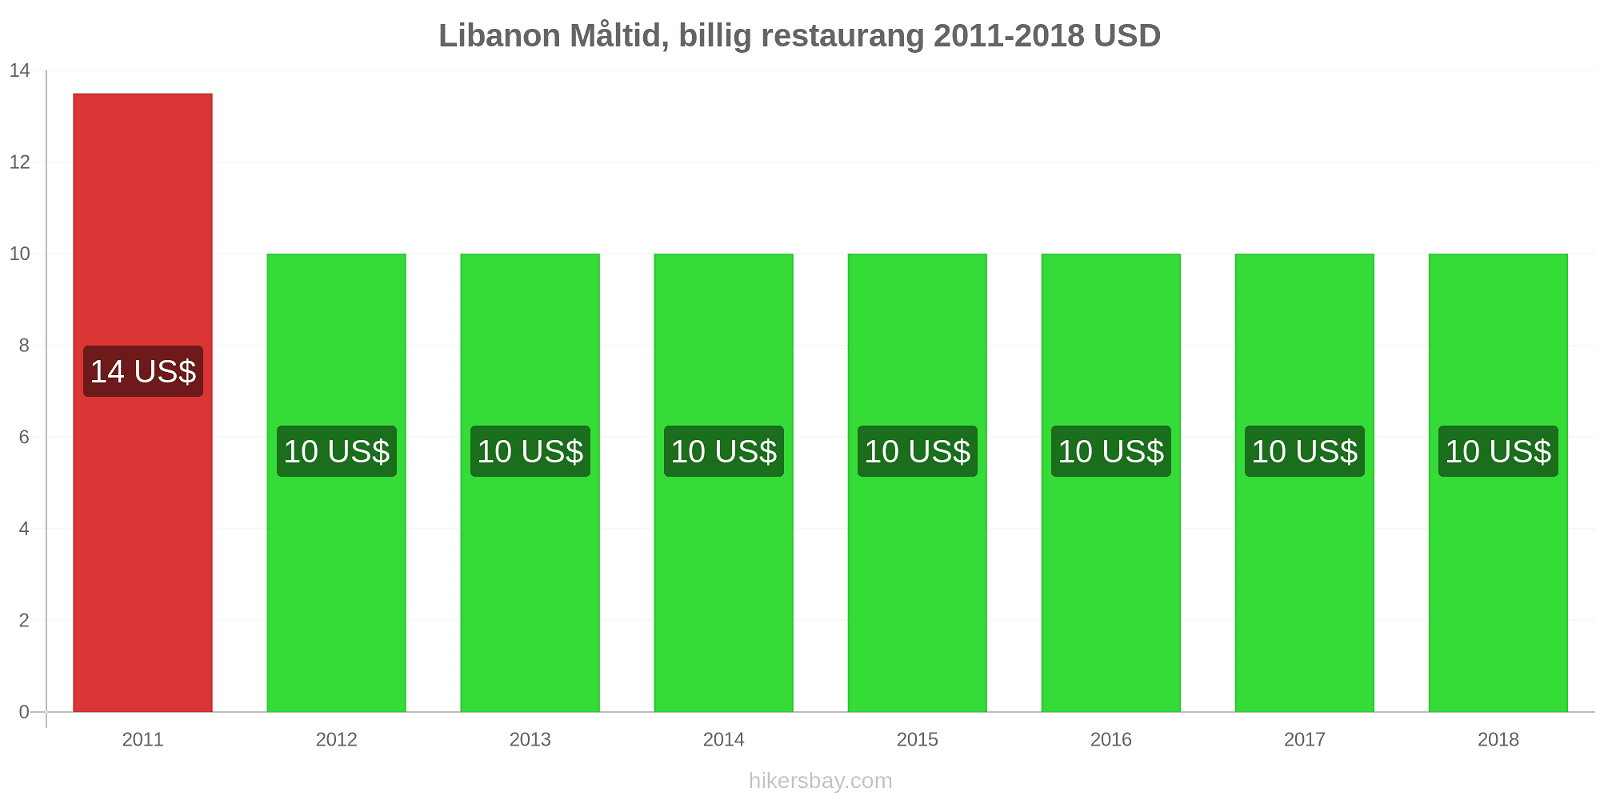 Libanon prisändringar Måltid i en billig restaurang hikersbay.com